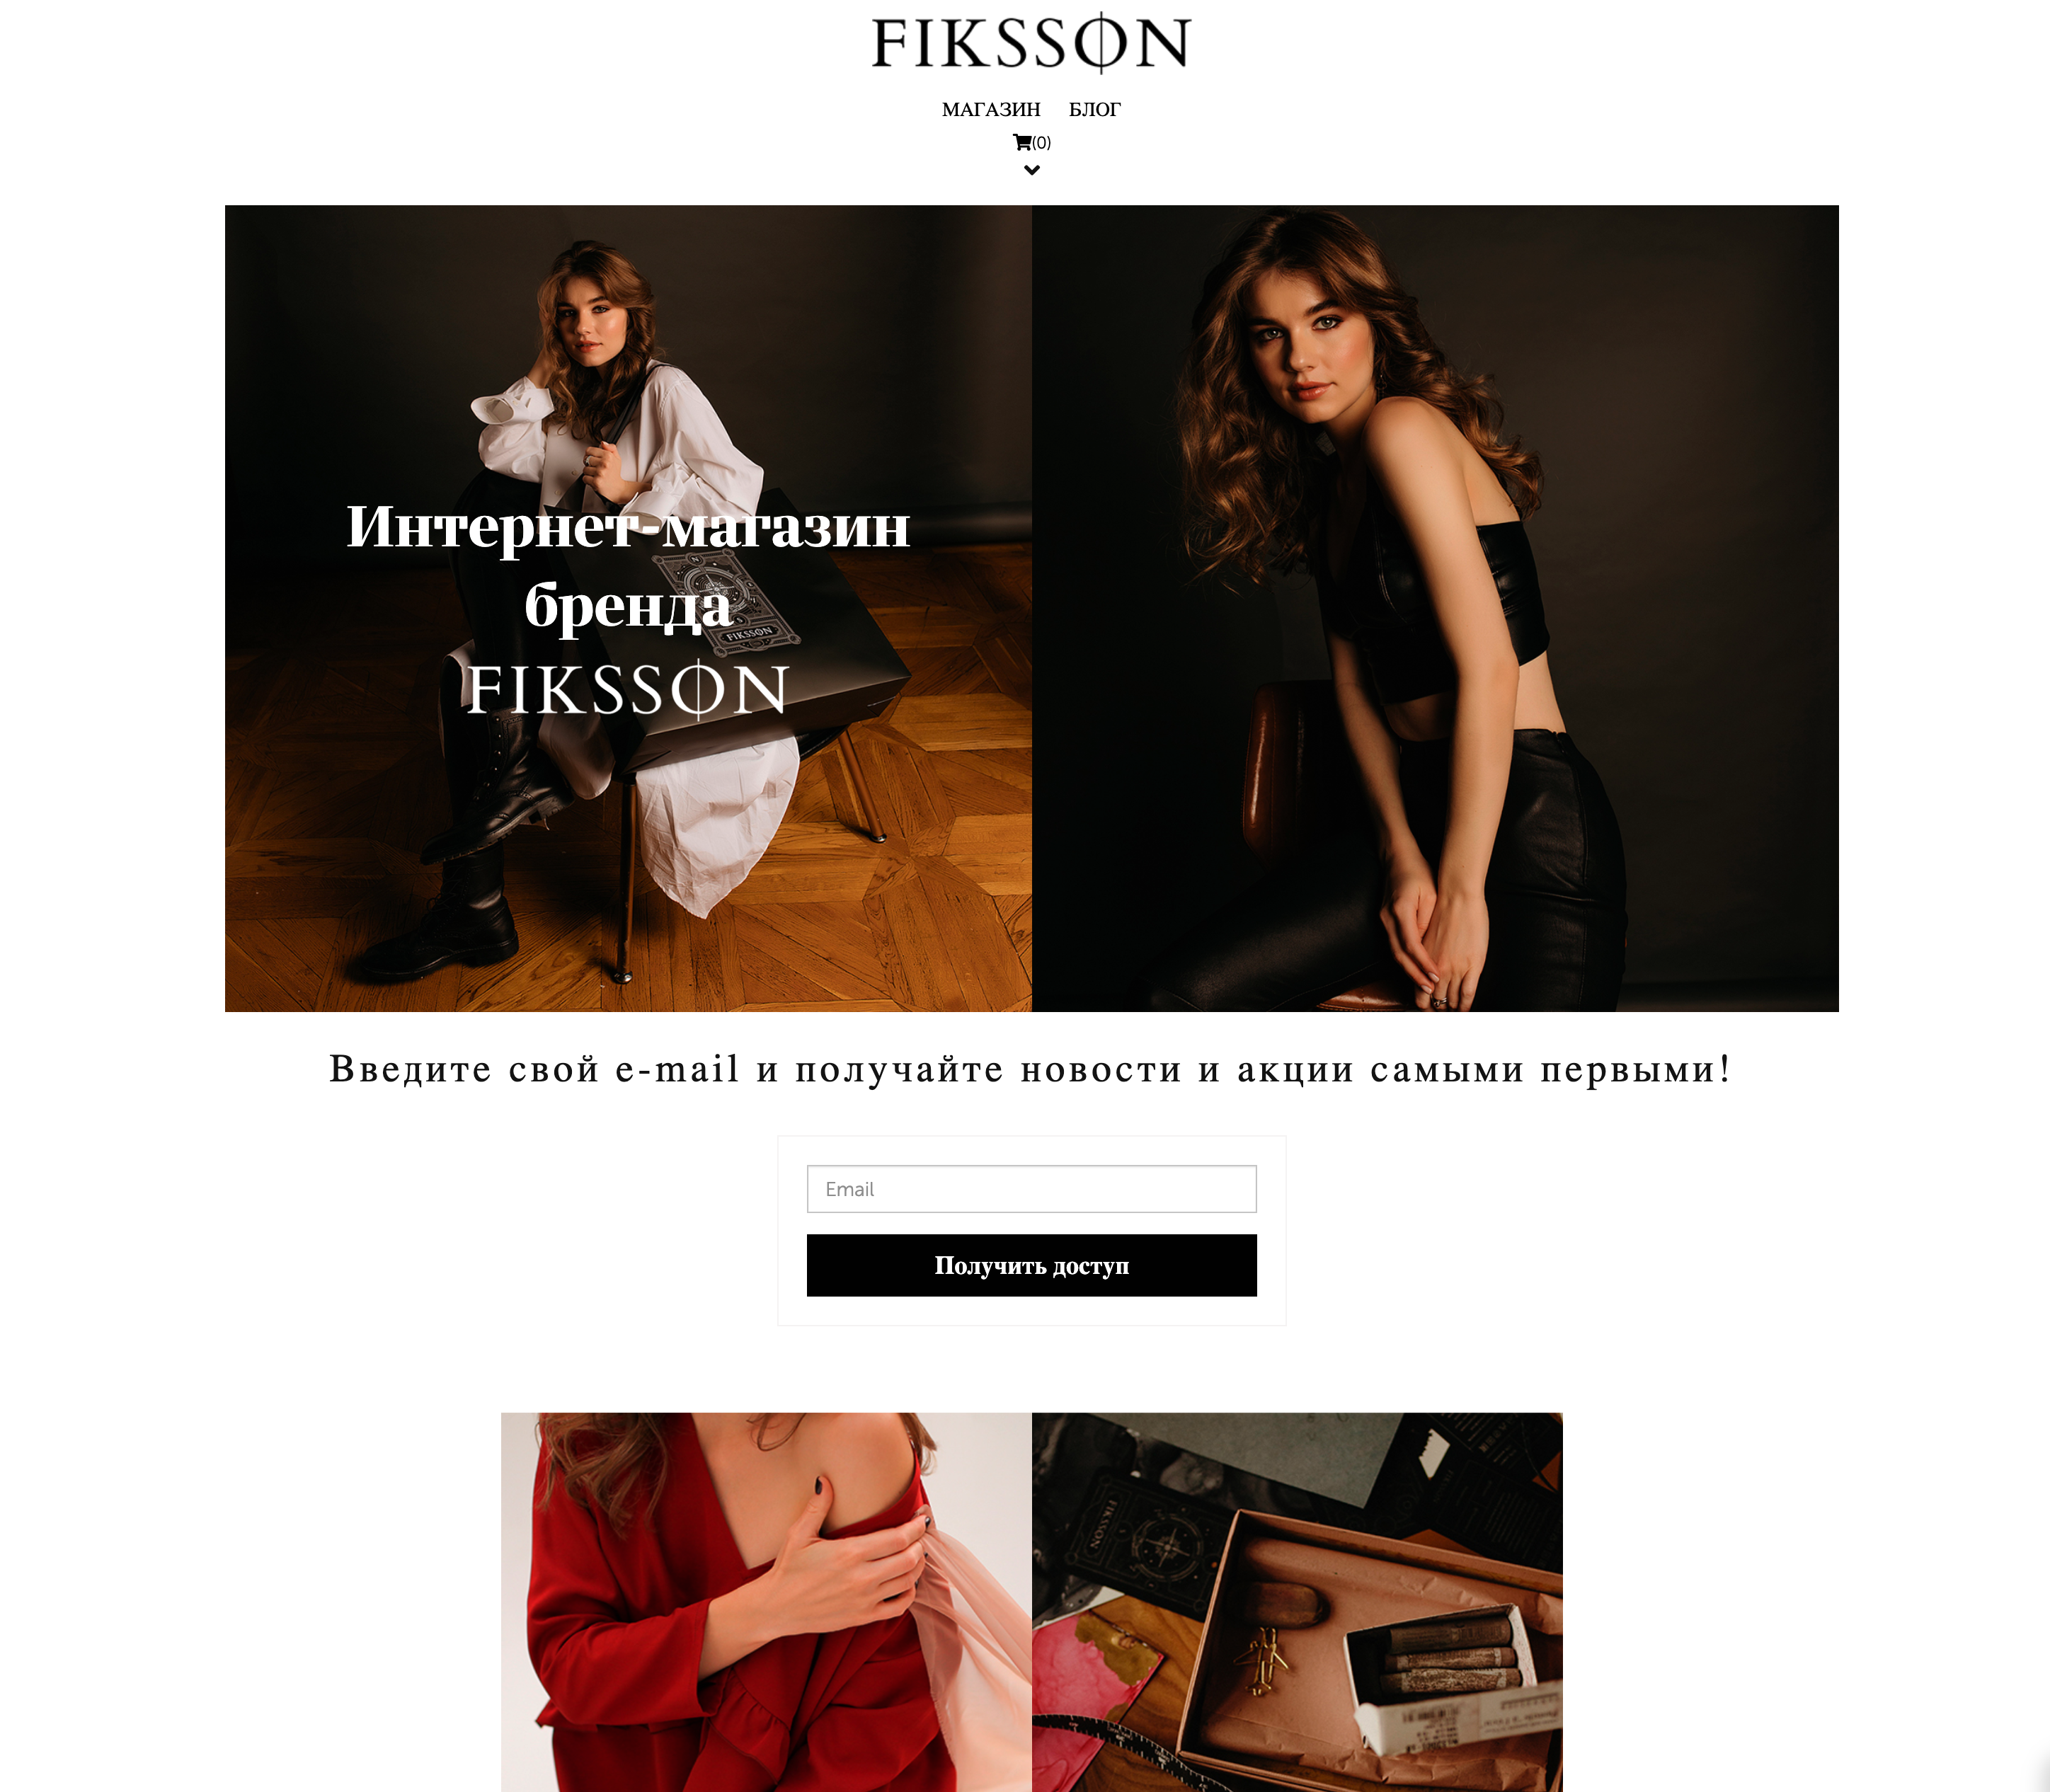  Fiksson.com интернет-магазин дизайнера одежды Марии Фикссон